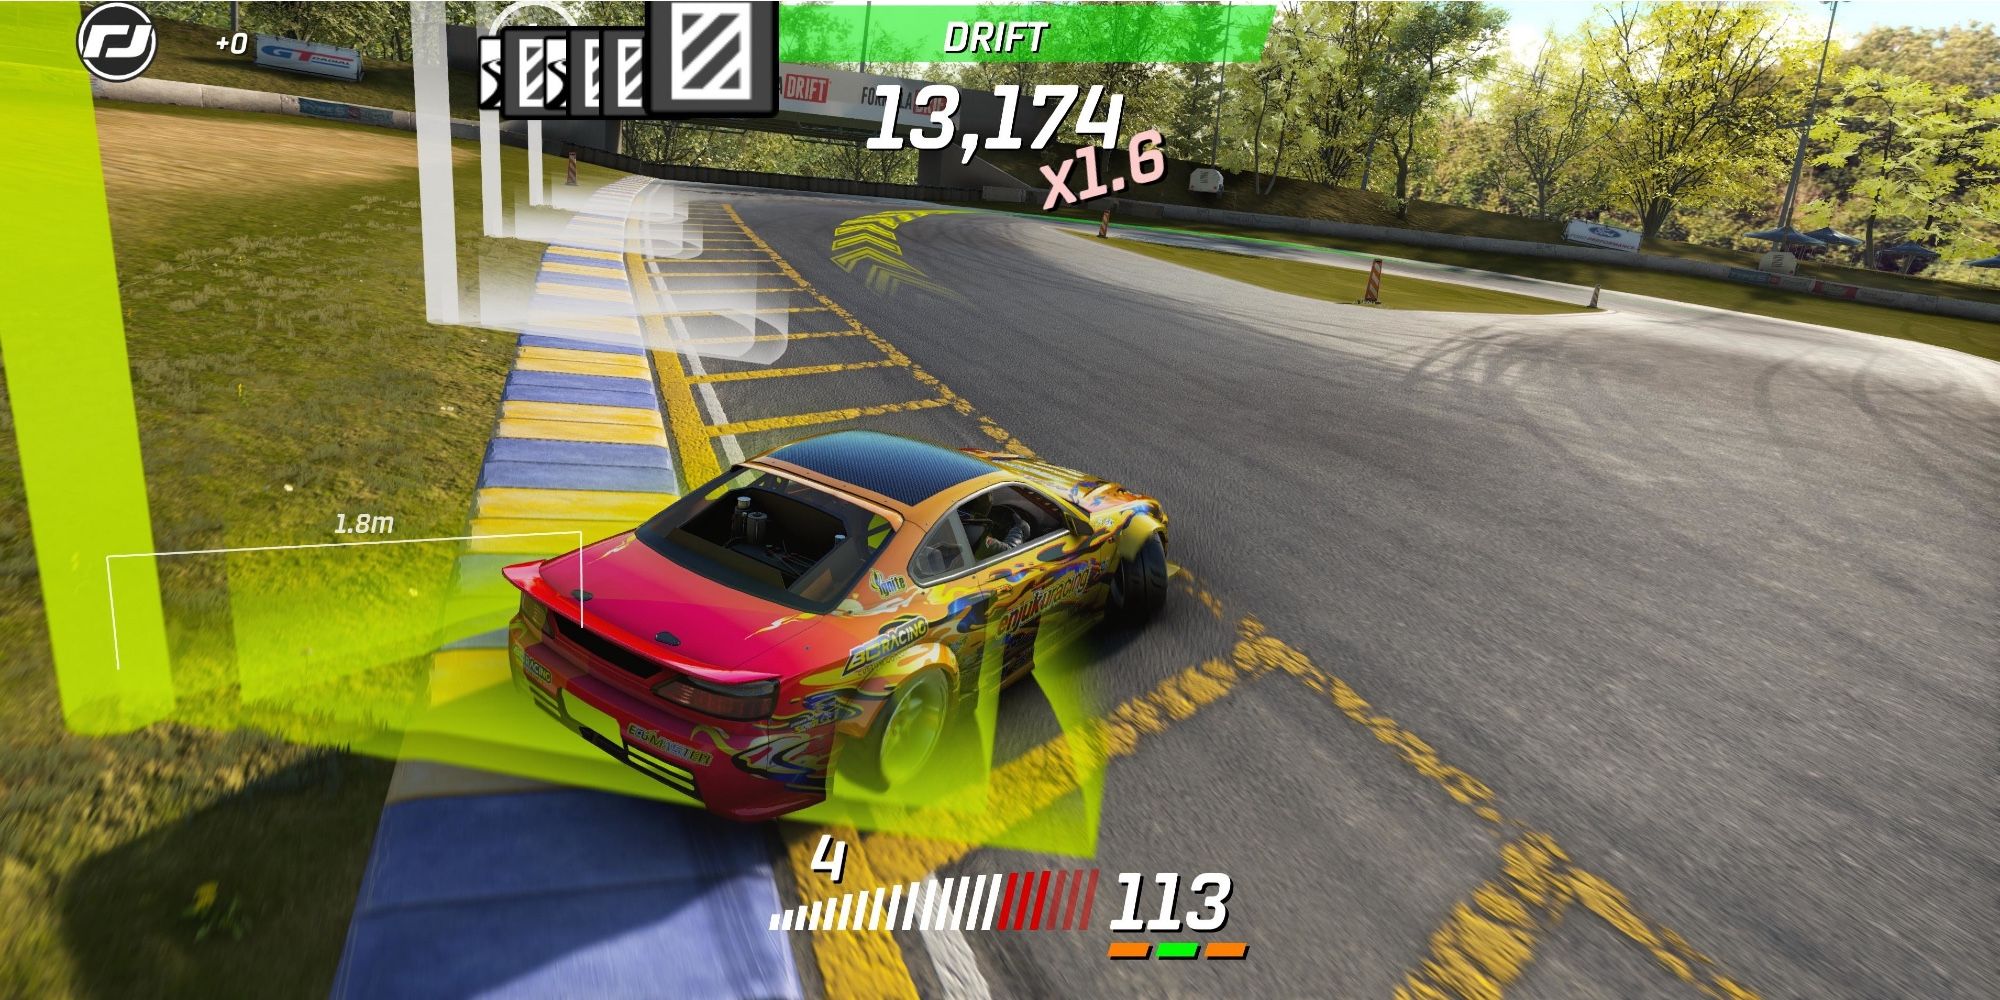 Free-to-play Games - Torque Drift - Player drifts car at high speeds